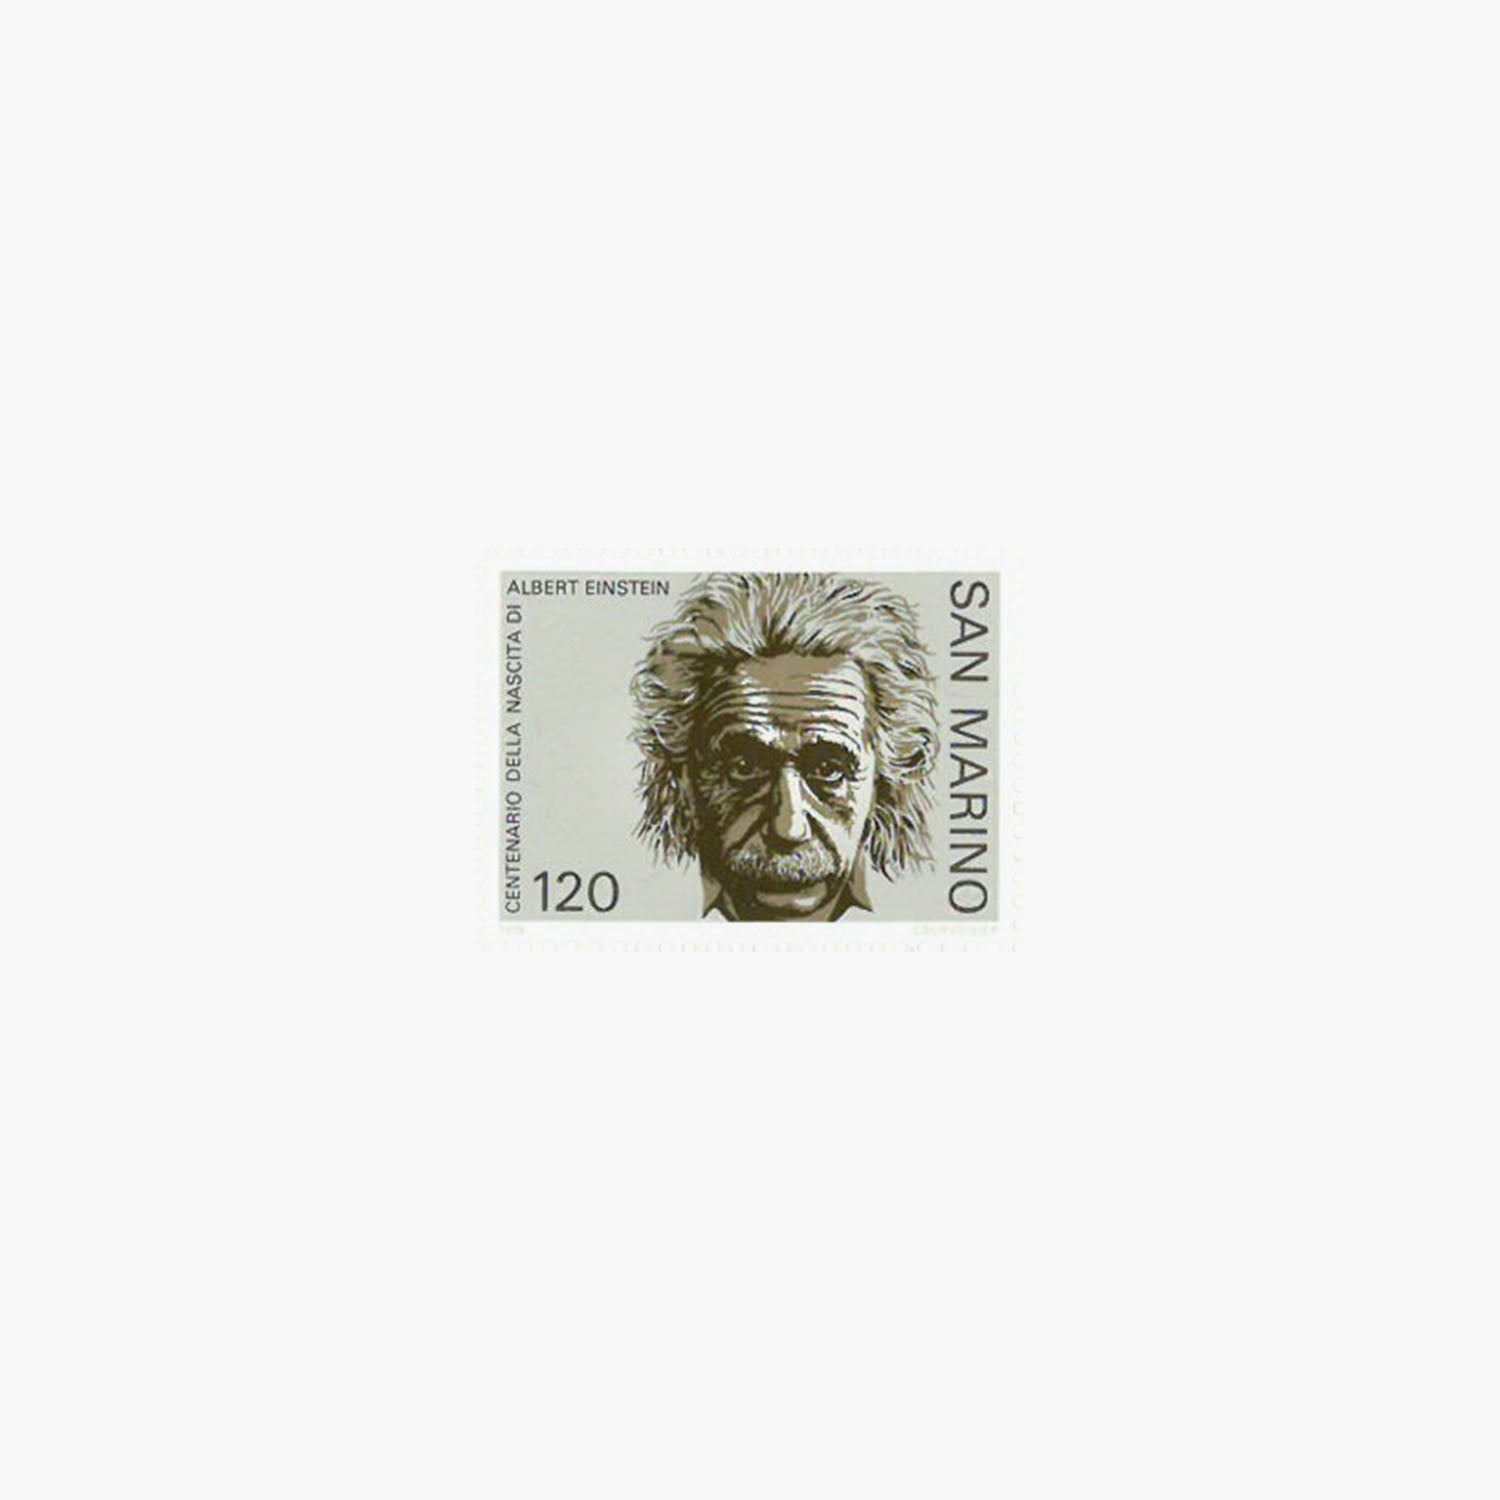 Collection de pièces, de billets et de timbres d'Albert Einstein